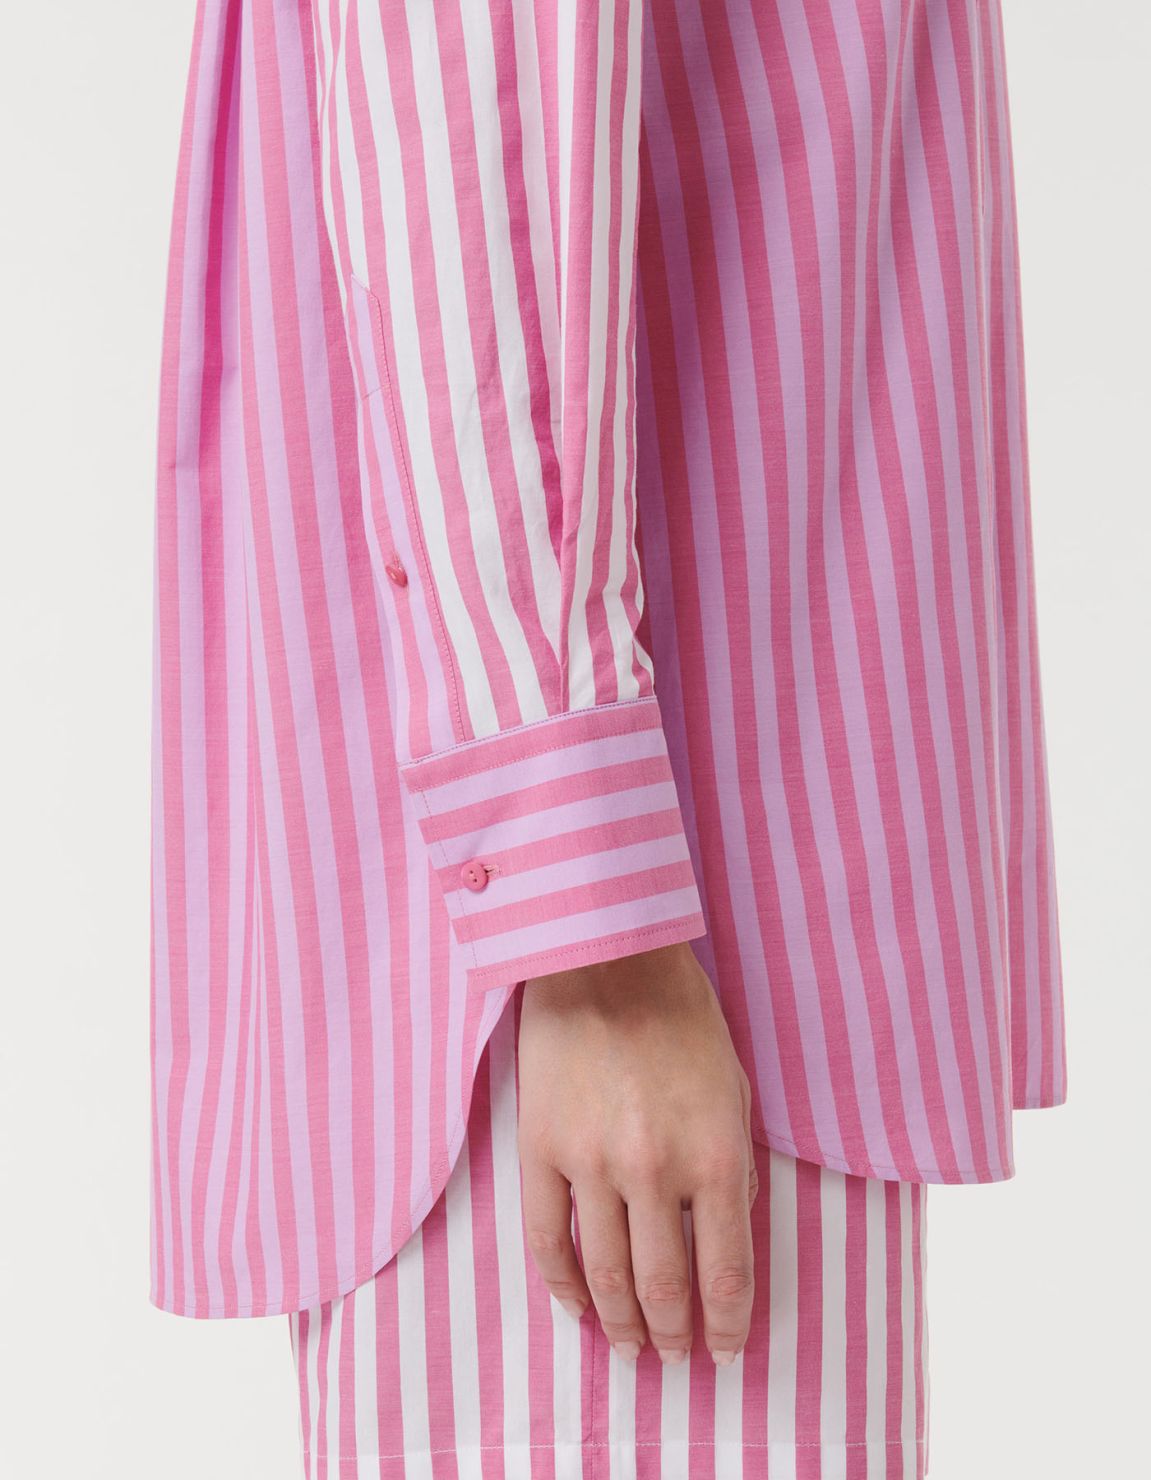 Shirt Dark Pink Cotton Stripe Over 4